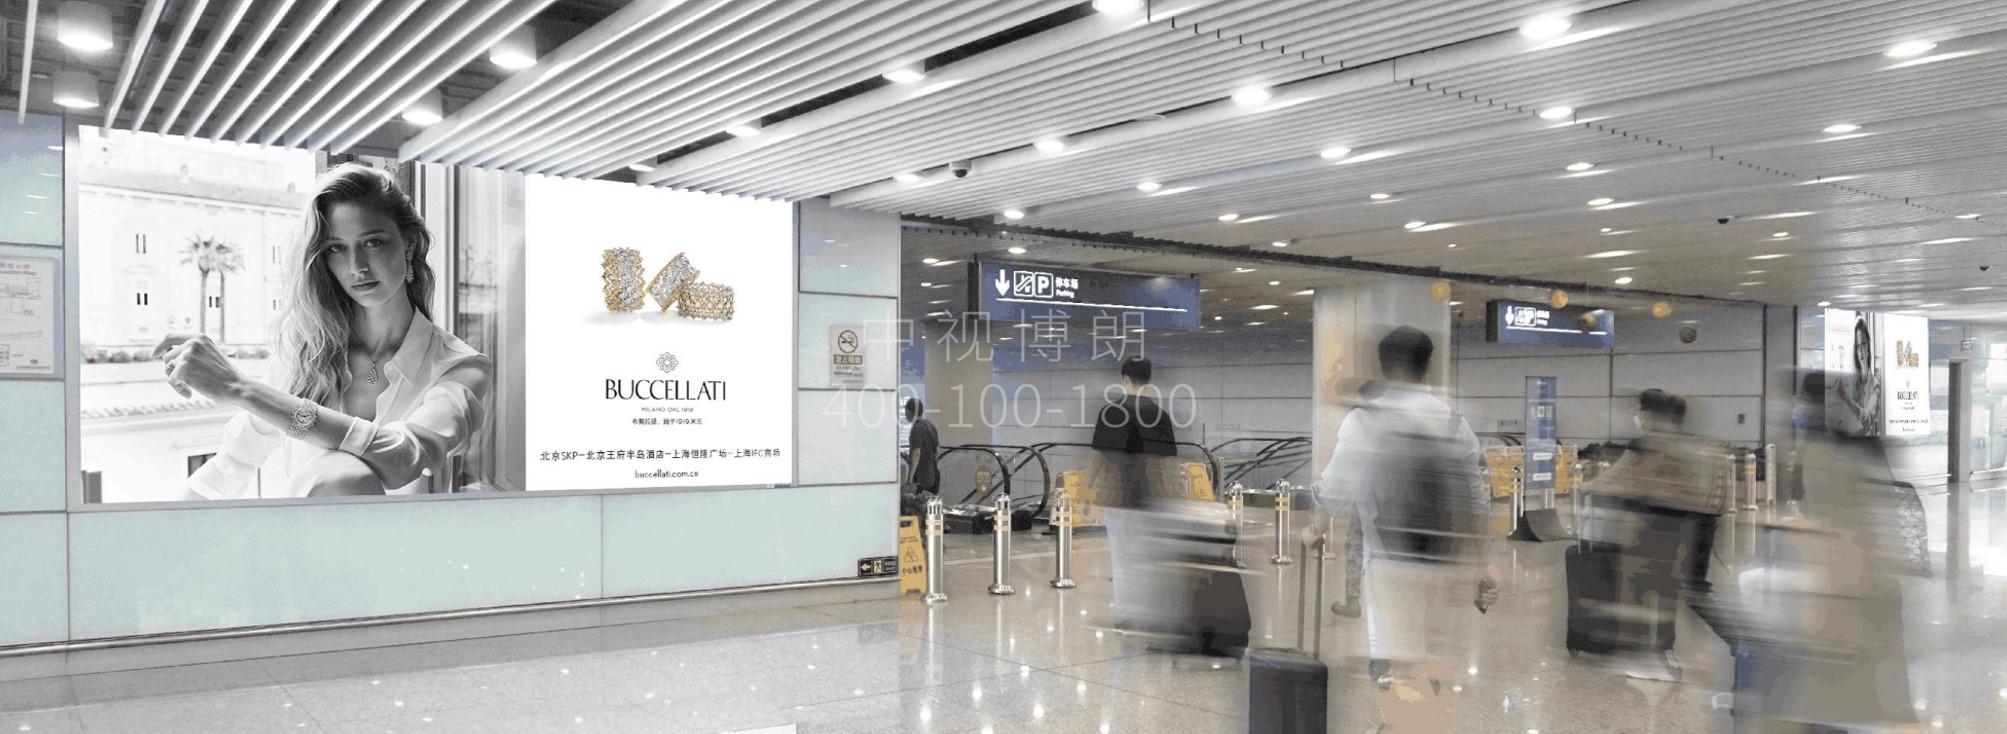 北京首都机场广告-T3客流汇集扶梯口5台LED屏